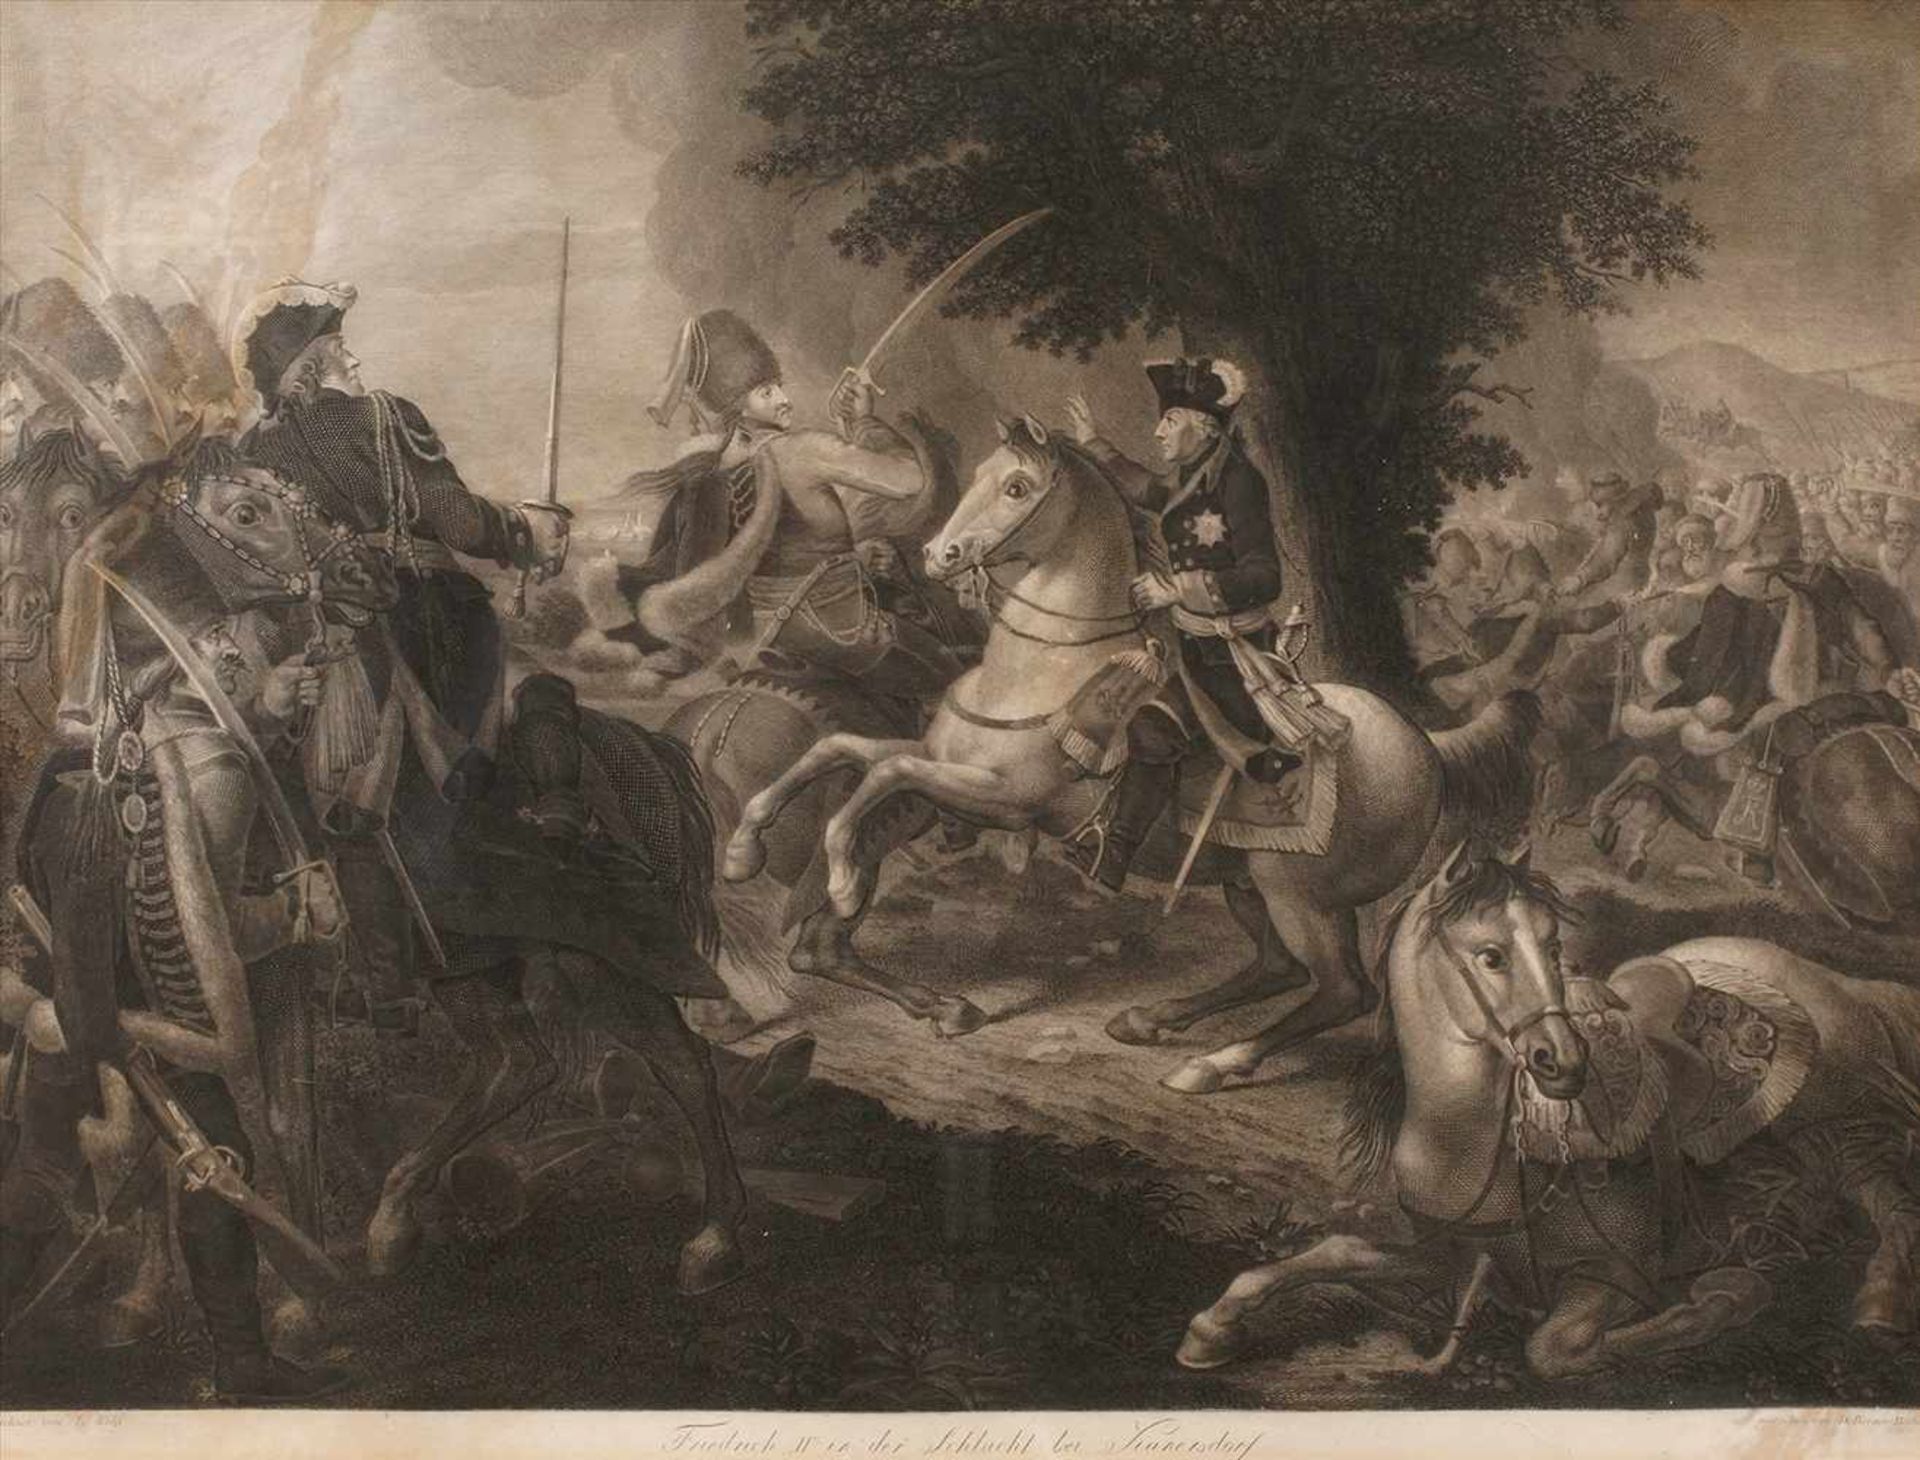 Daniel Berger "Friedrich II bei Kunersdorf"der Preußenkönig zu Pferde im Schlachtengetümmel,